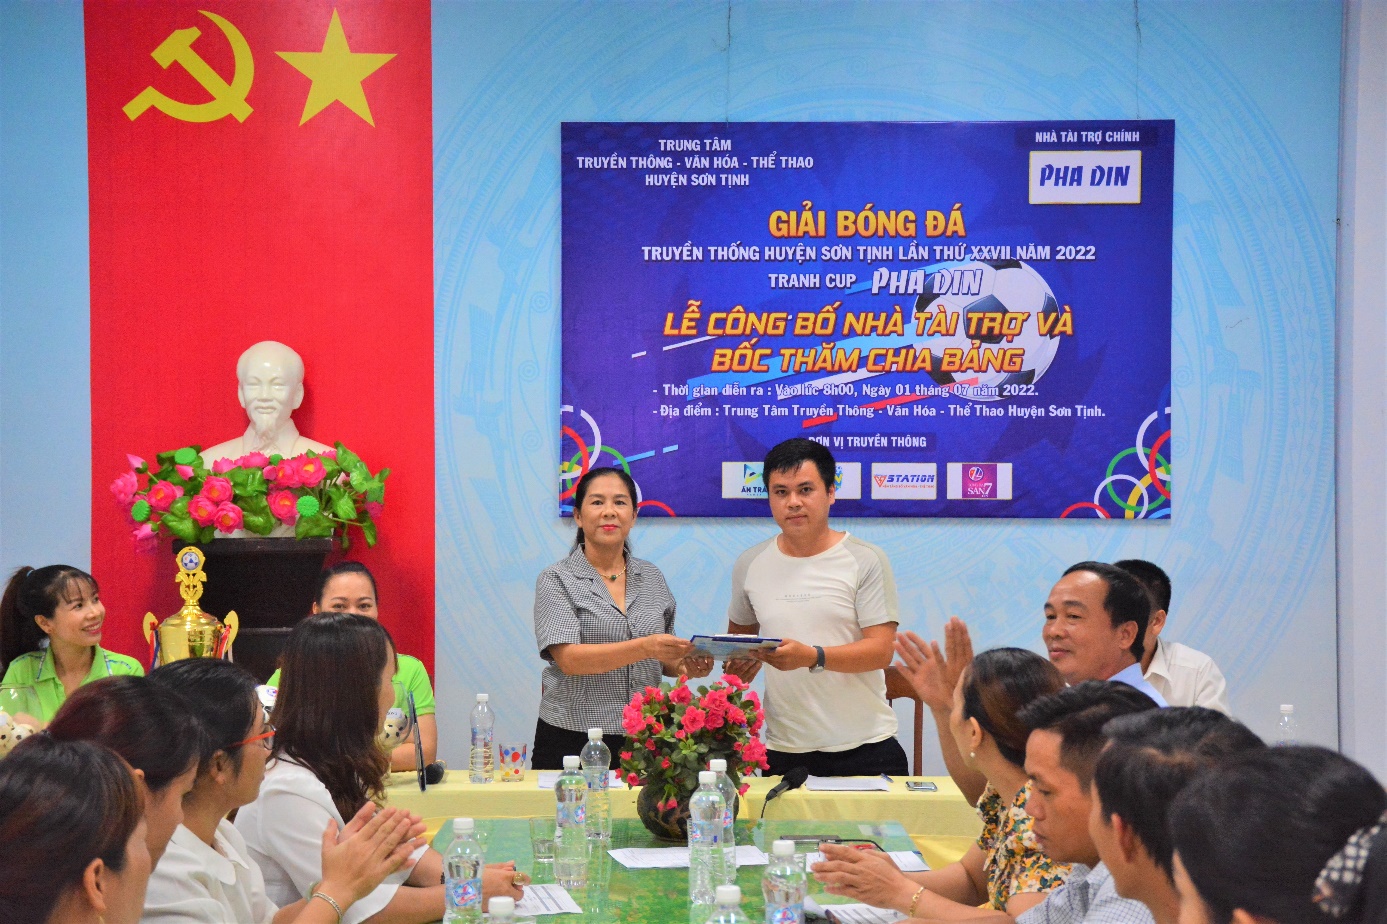 Lễ ký kết, công bố nhà tài trợ và bốc thăm chia bảng giải bóng đá Truyền thống huyện Sơn Tịnh lần thứ XXVII